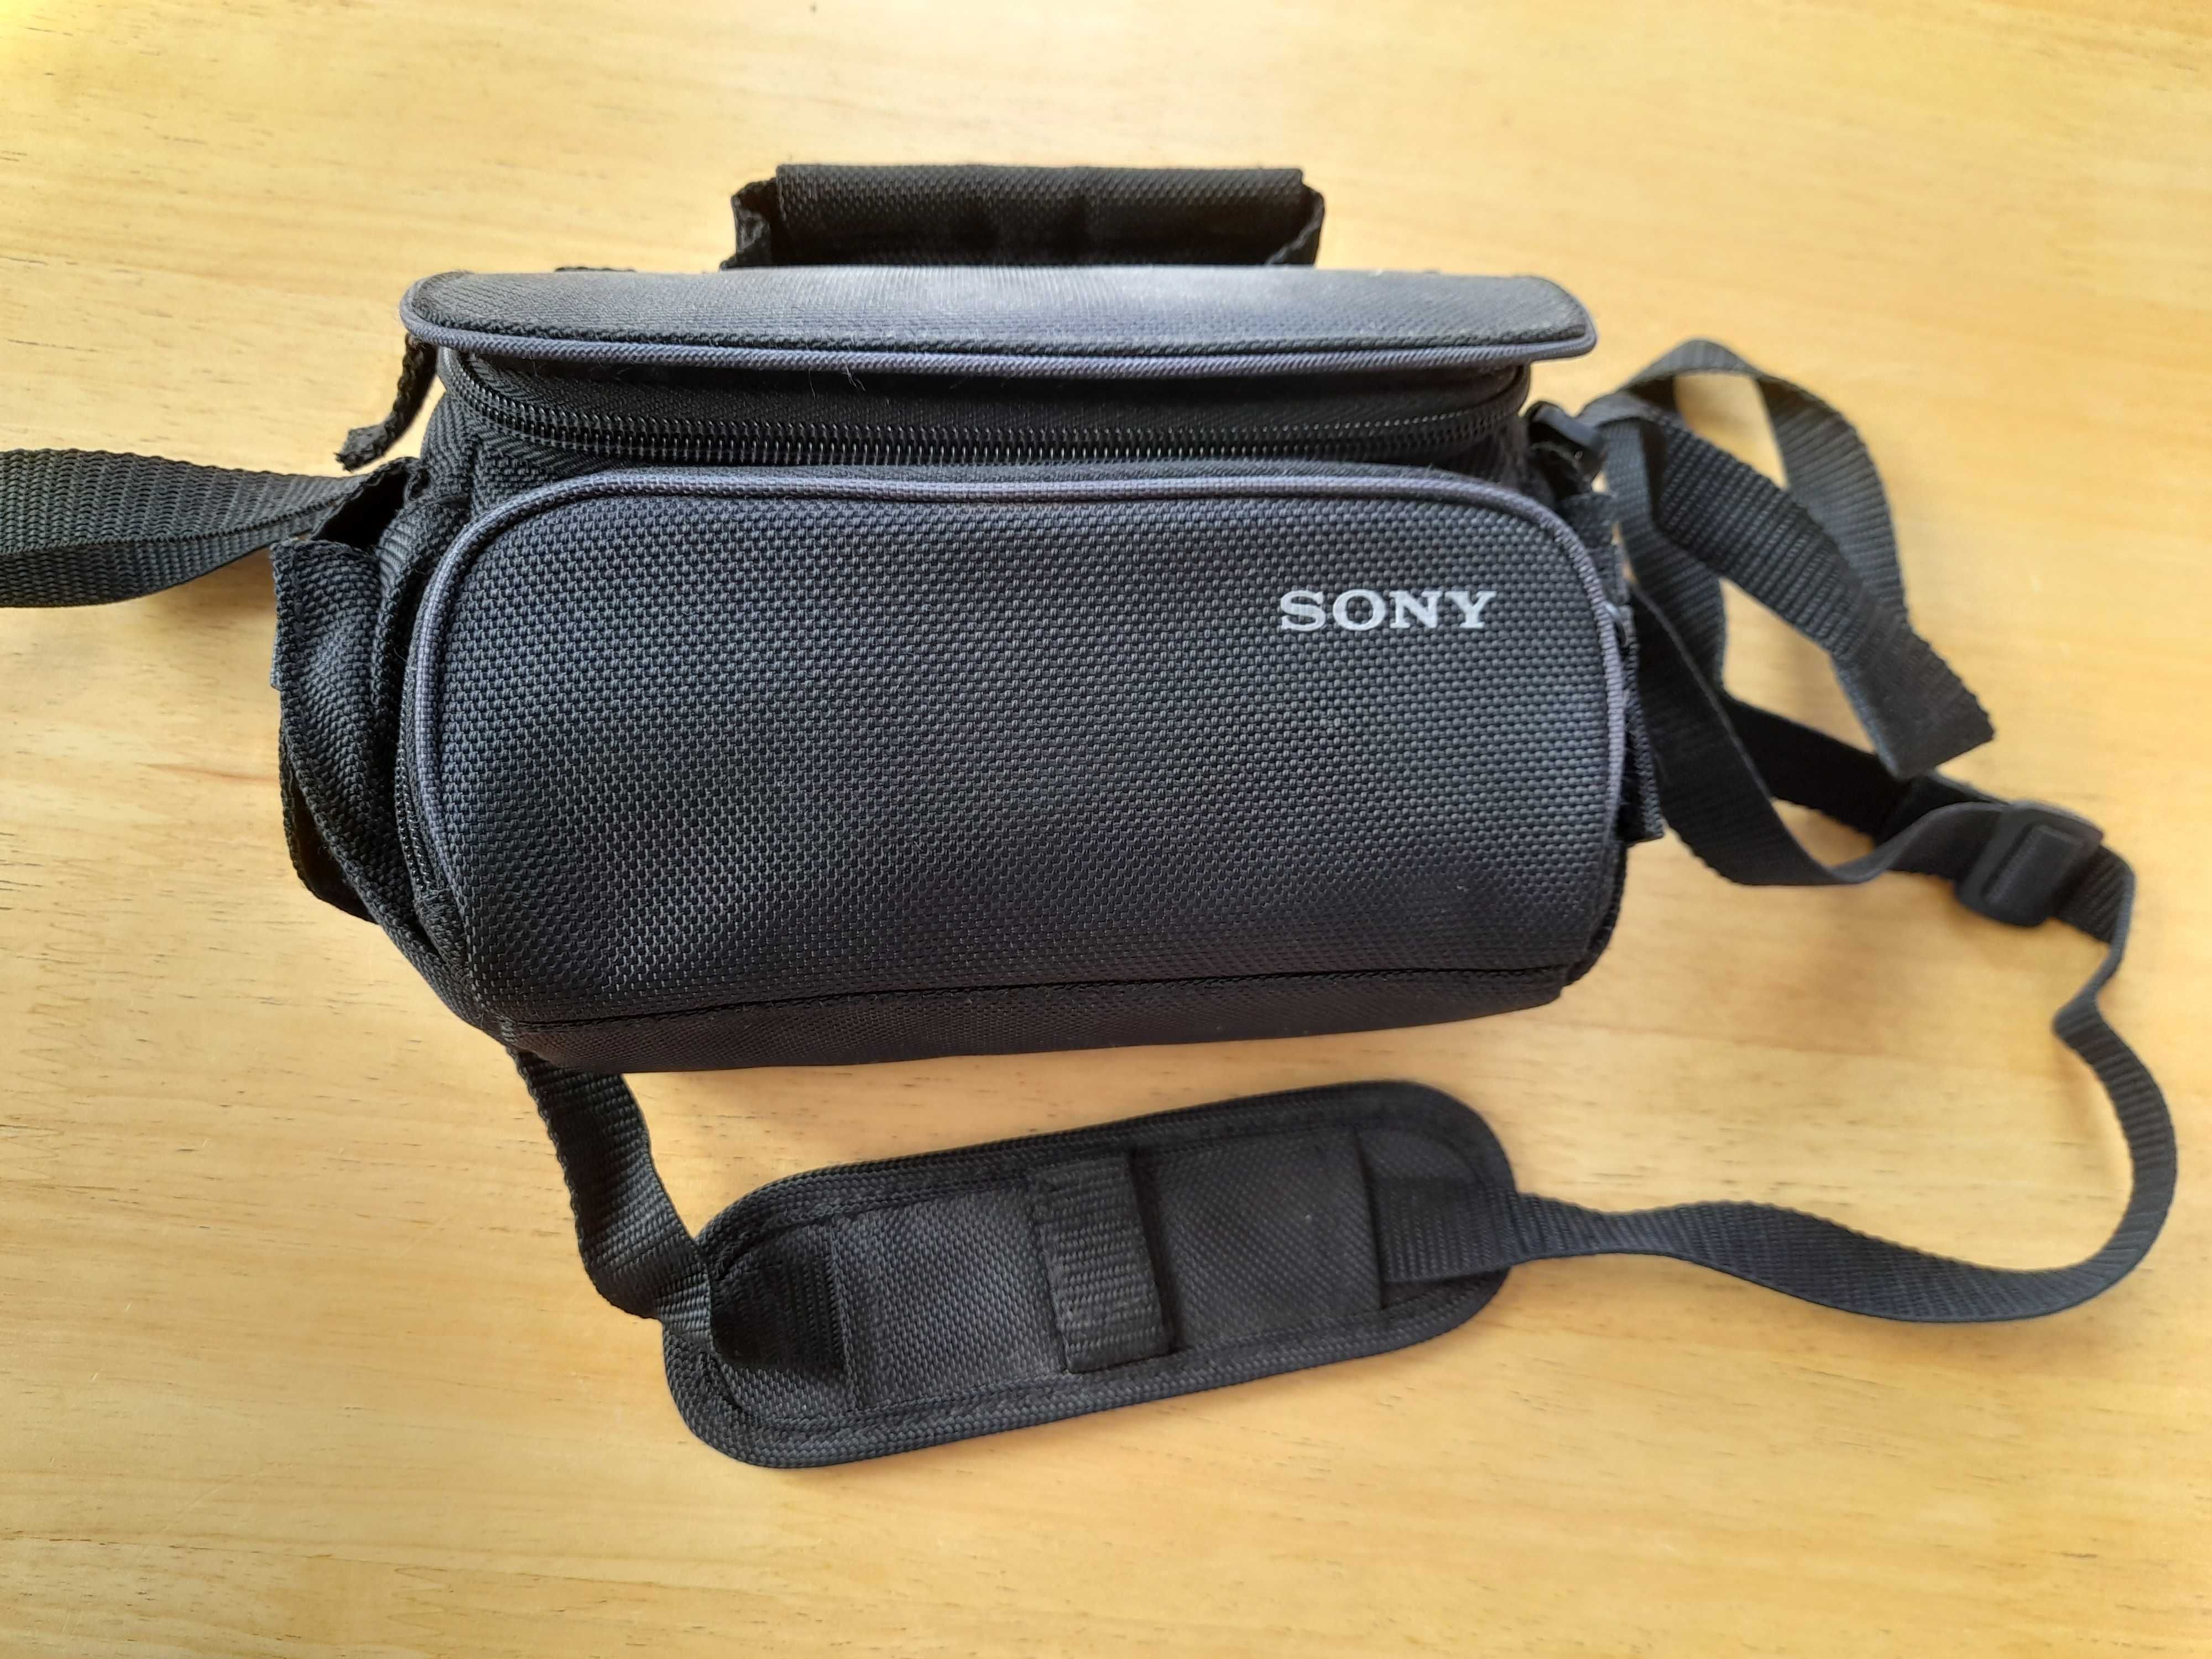 Sony Handycam câmara de filmar e fotografar